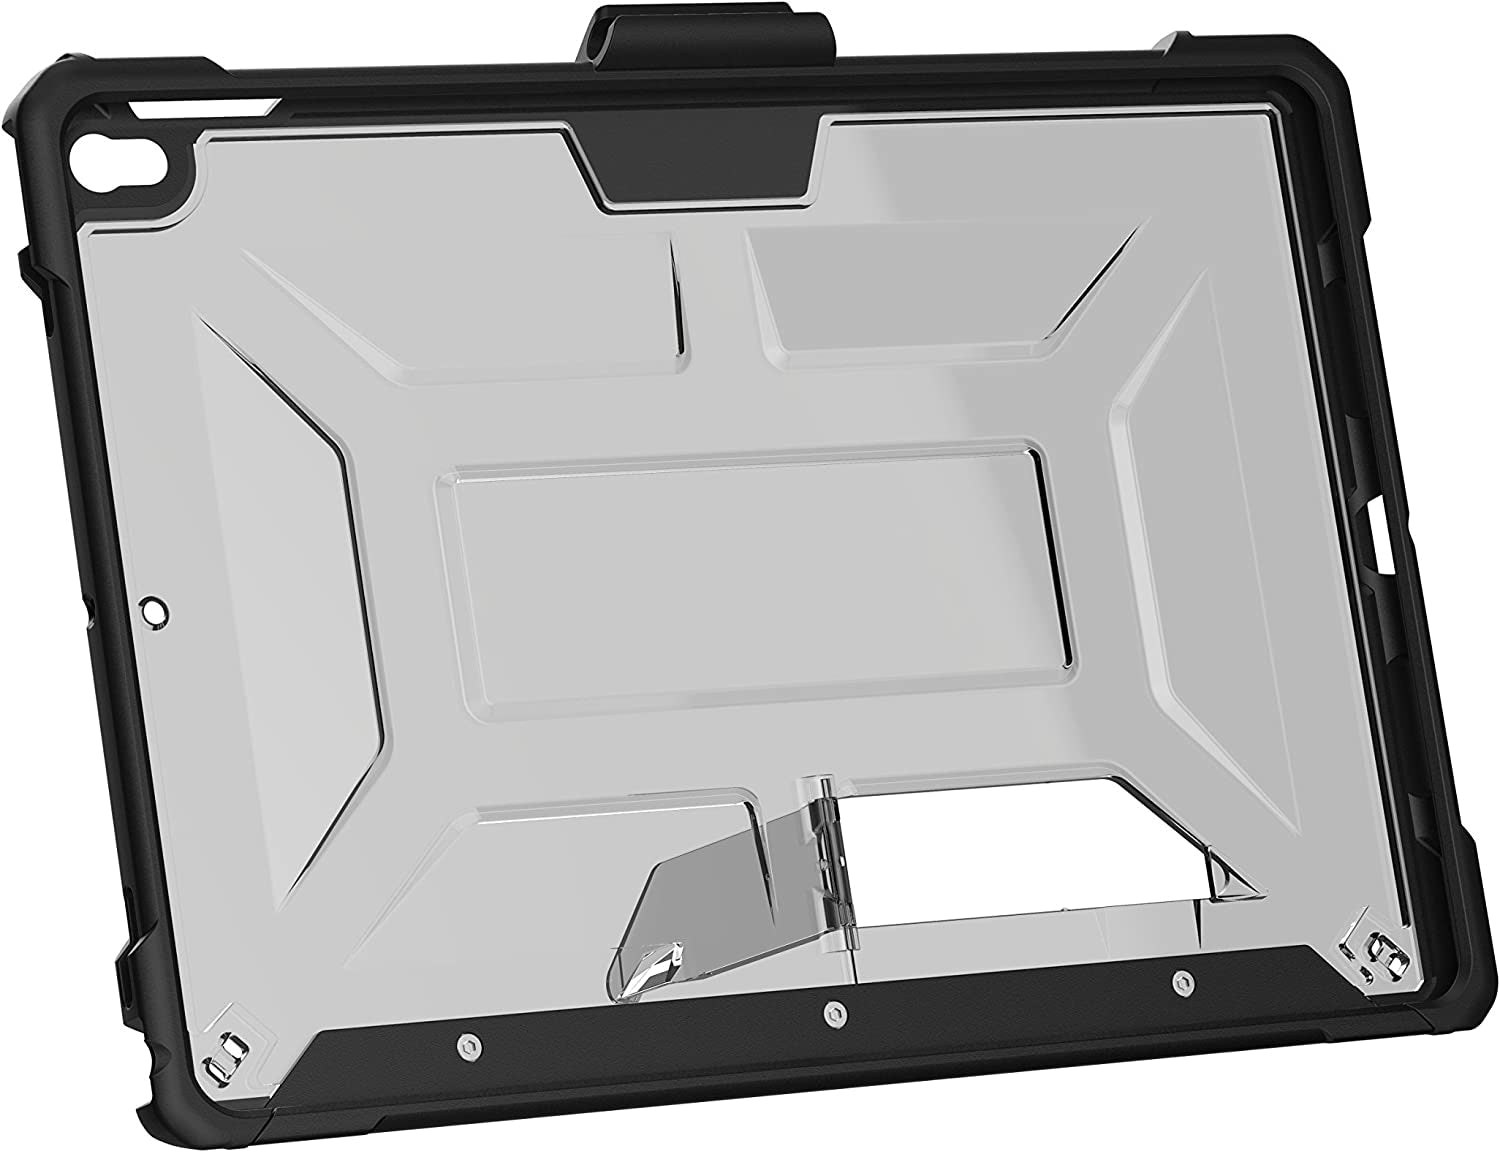 Husa Urban Armor Gear Metropolis - iPad Air 3 (2019) & Pro 10.5’ - IPDP10.5-E-MG - 854332007646 - 21